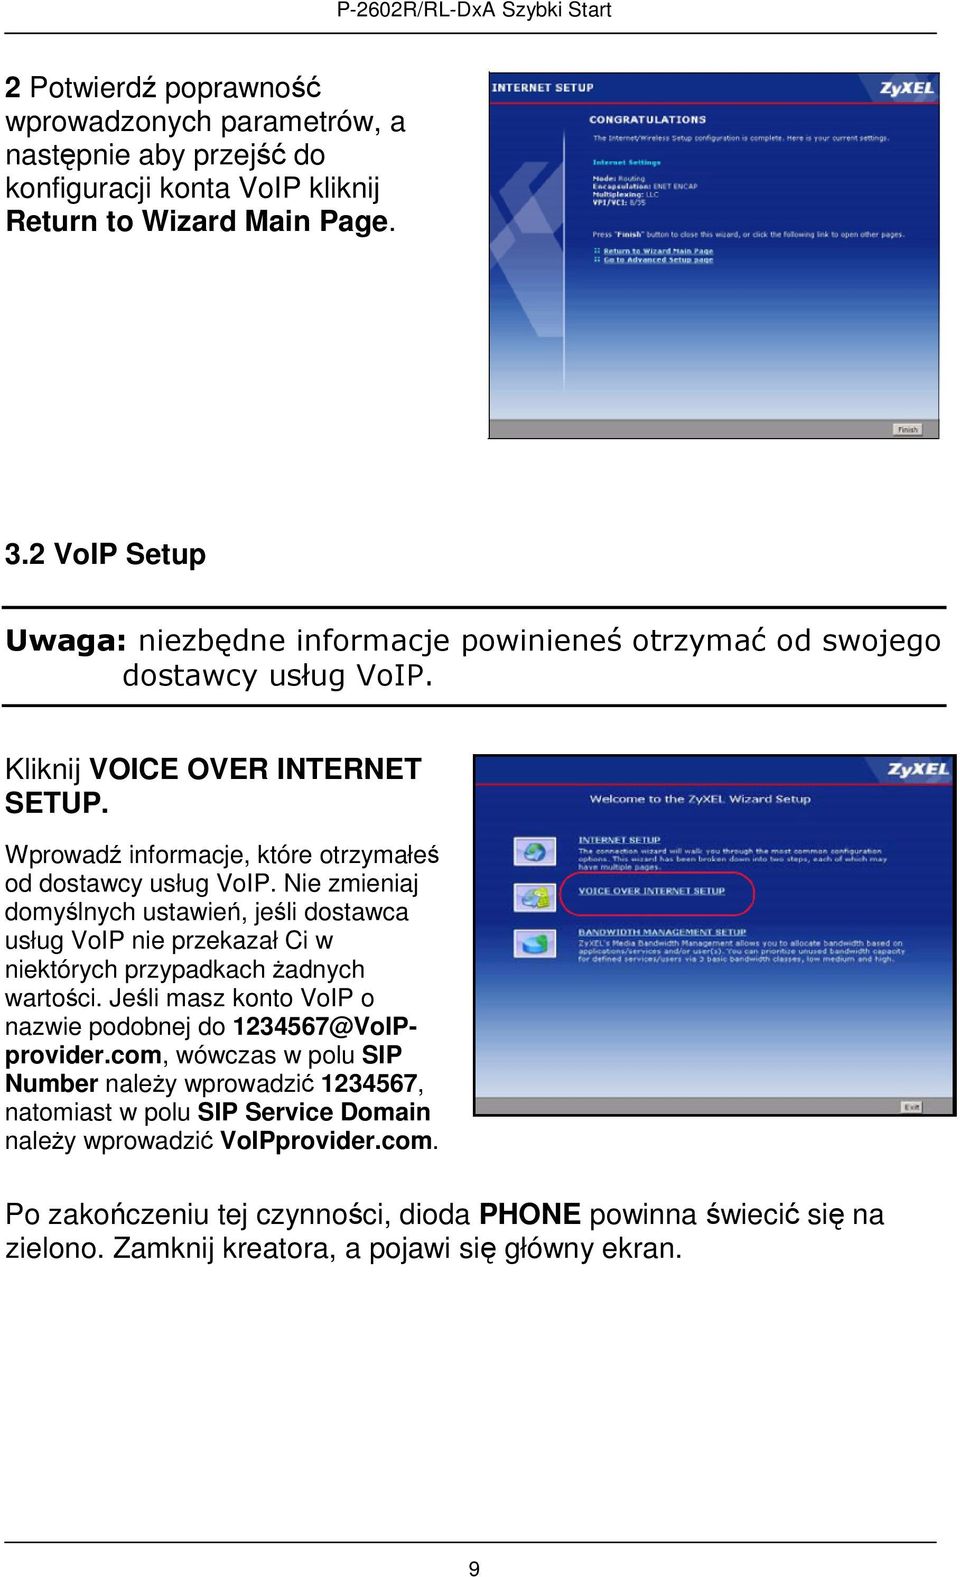 Nie zmieniaj domyślnych ustawień, jeśli dostawca usług VoIP nie przekazał Ci w niektórych przypadkach żadnych wartości. Jeśli masz konto VoIP o nazwie podobnej do 1234567@VoIPprovider.